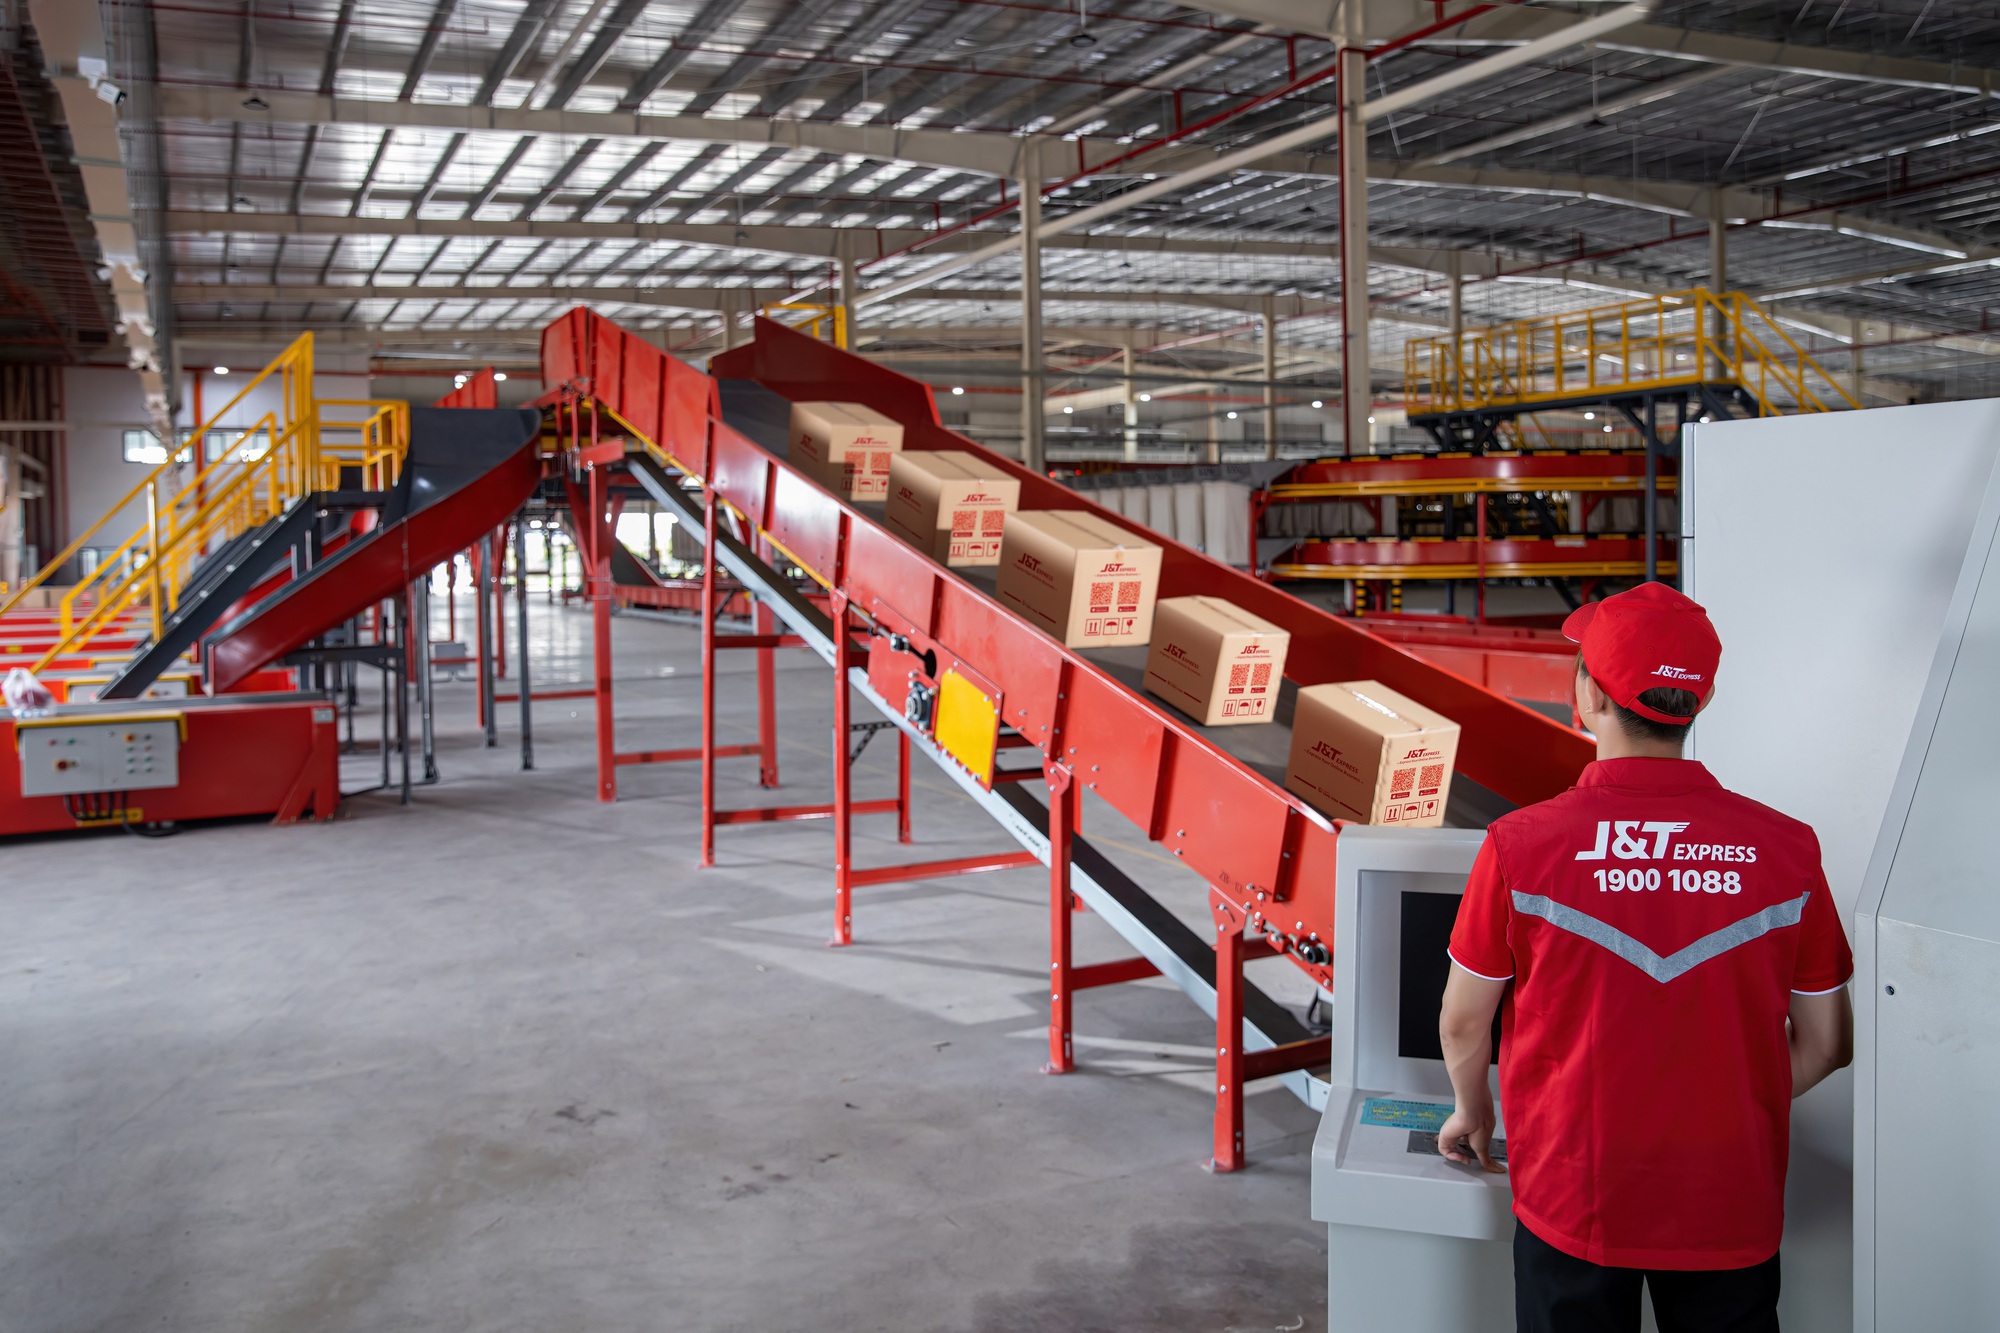 [Inside Factory] Soi trung tâm trung chuyển lớn nhất của J&T Express tại Việt Nam: Quy mô bằng chục trung tâm cộng lại, chỉ cần 30 - 40% nhân lực, xử lý 2 triệu kiện hàng/ngày - Ảnh 7.